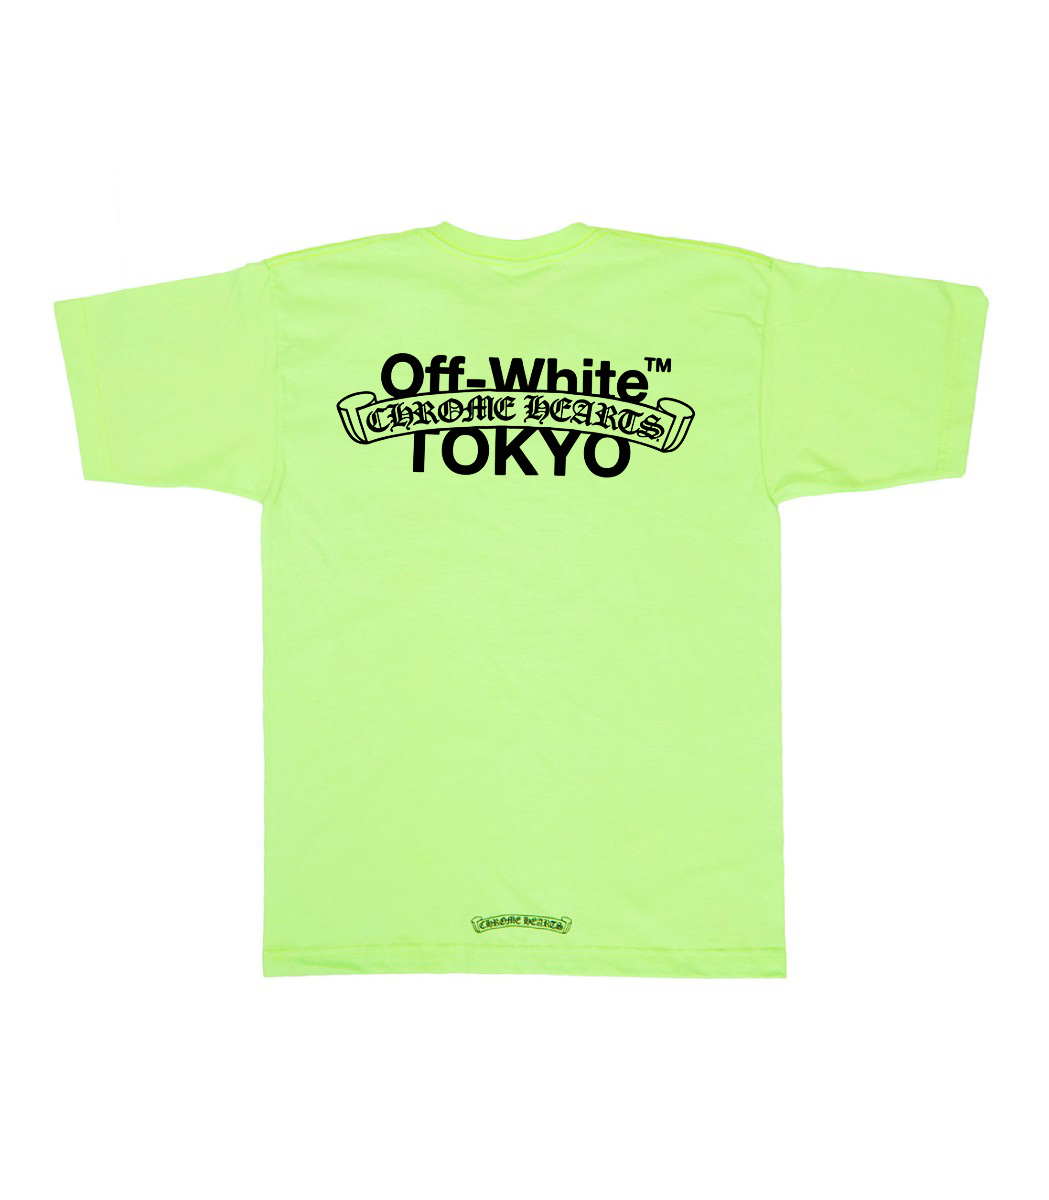 Off-White x Chrome Hearts Tokyo T-Shirt - Upto 30% Off